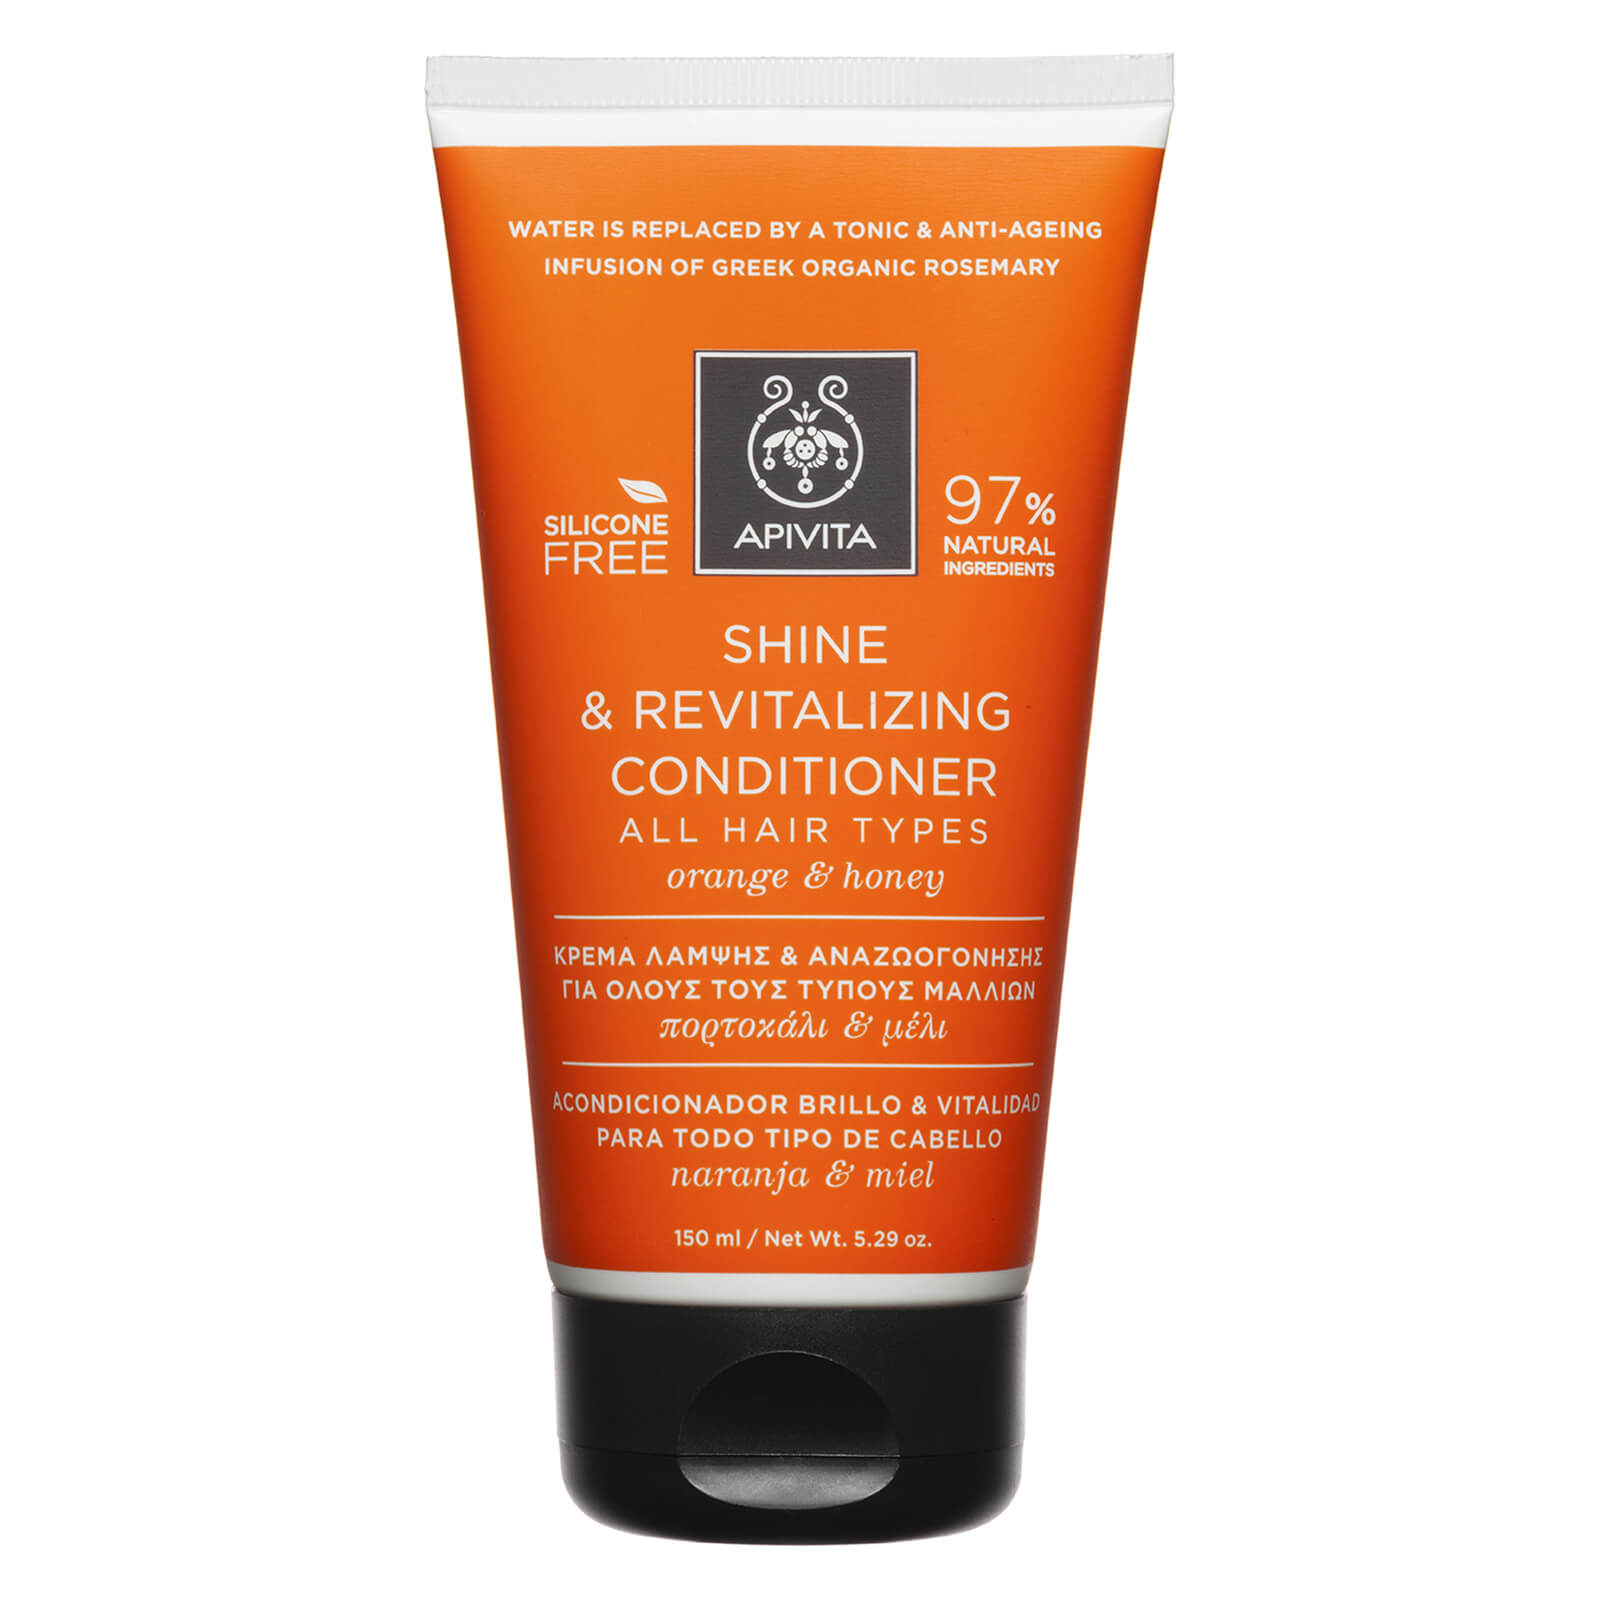 Acondicionador brillo y vitalidad para todo tipo de cabello de APIVITA - naranja y miel (150ml)